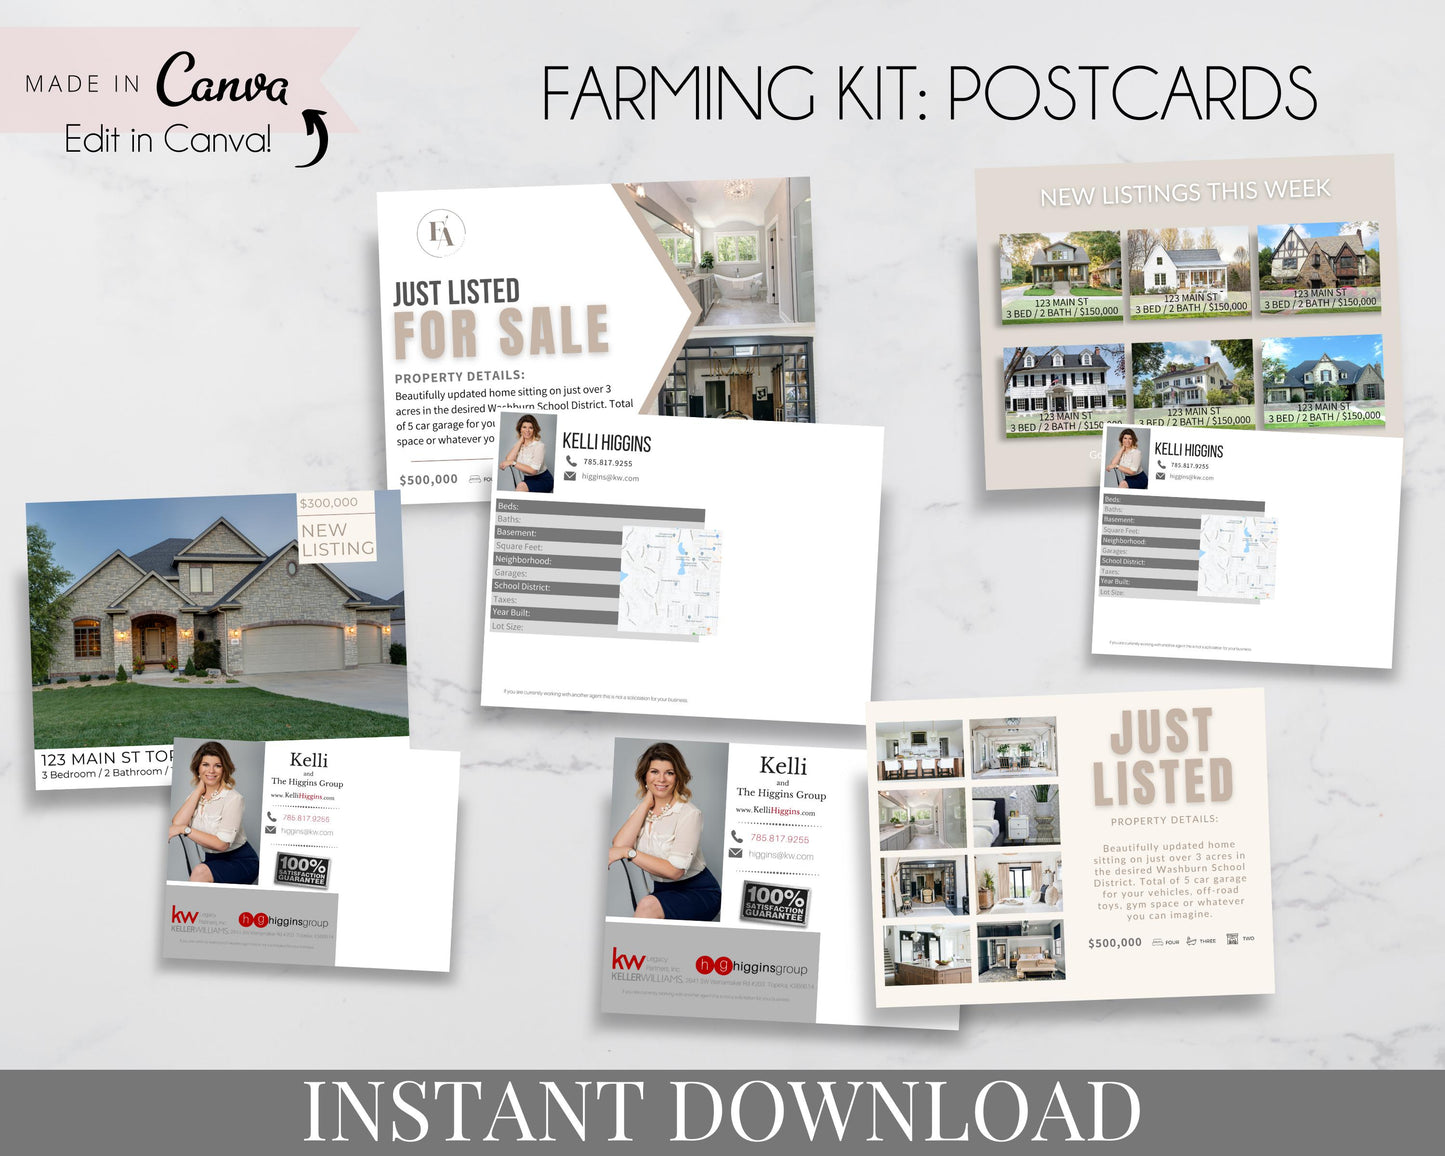 Real Estate Farming Kit - Marketing Plan